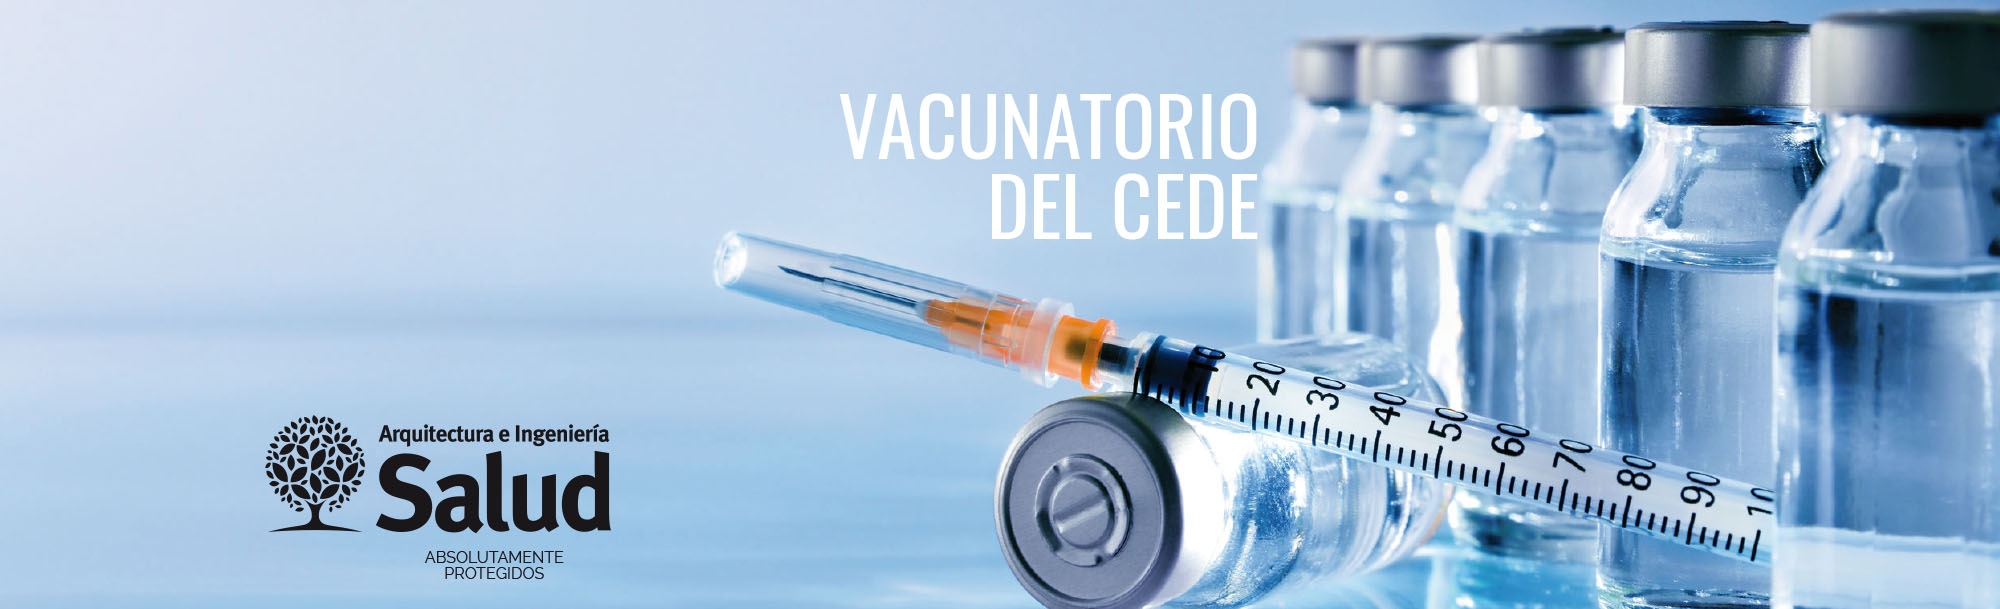 CEDE | Vacunatorio